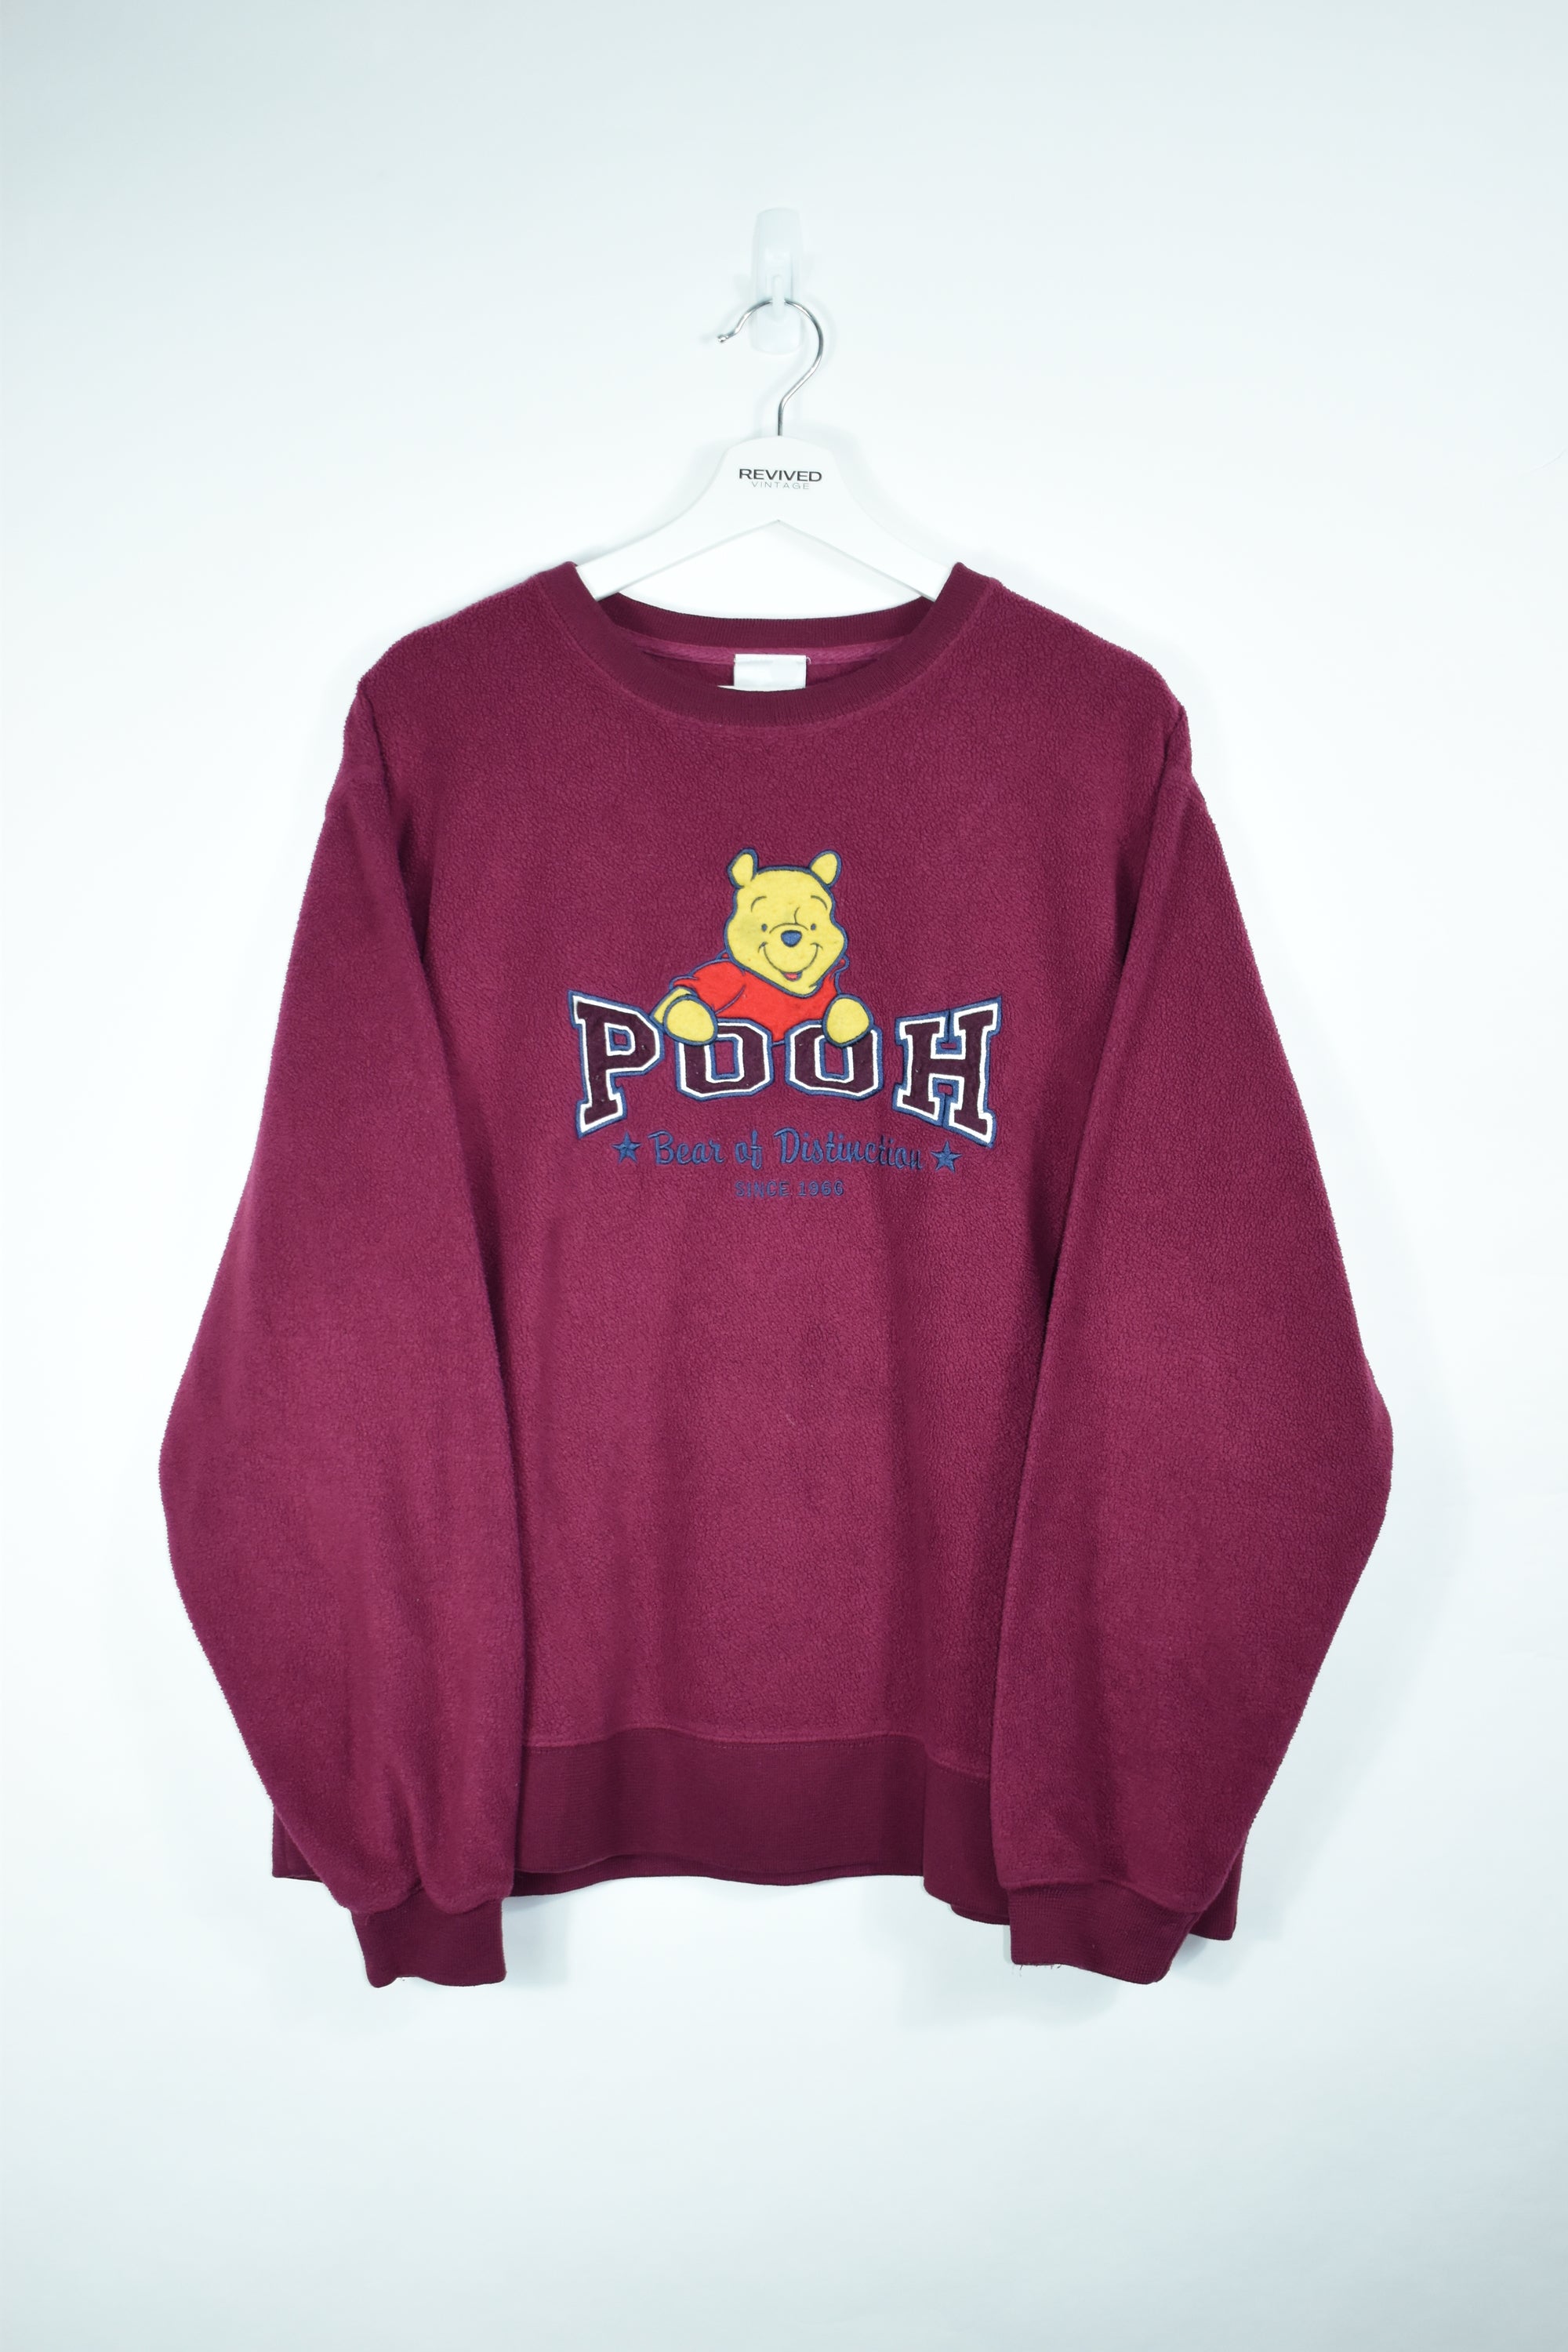 Vintage Disney Pooh Embroidery Fleece Sweatshirt Large (Baggy)